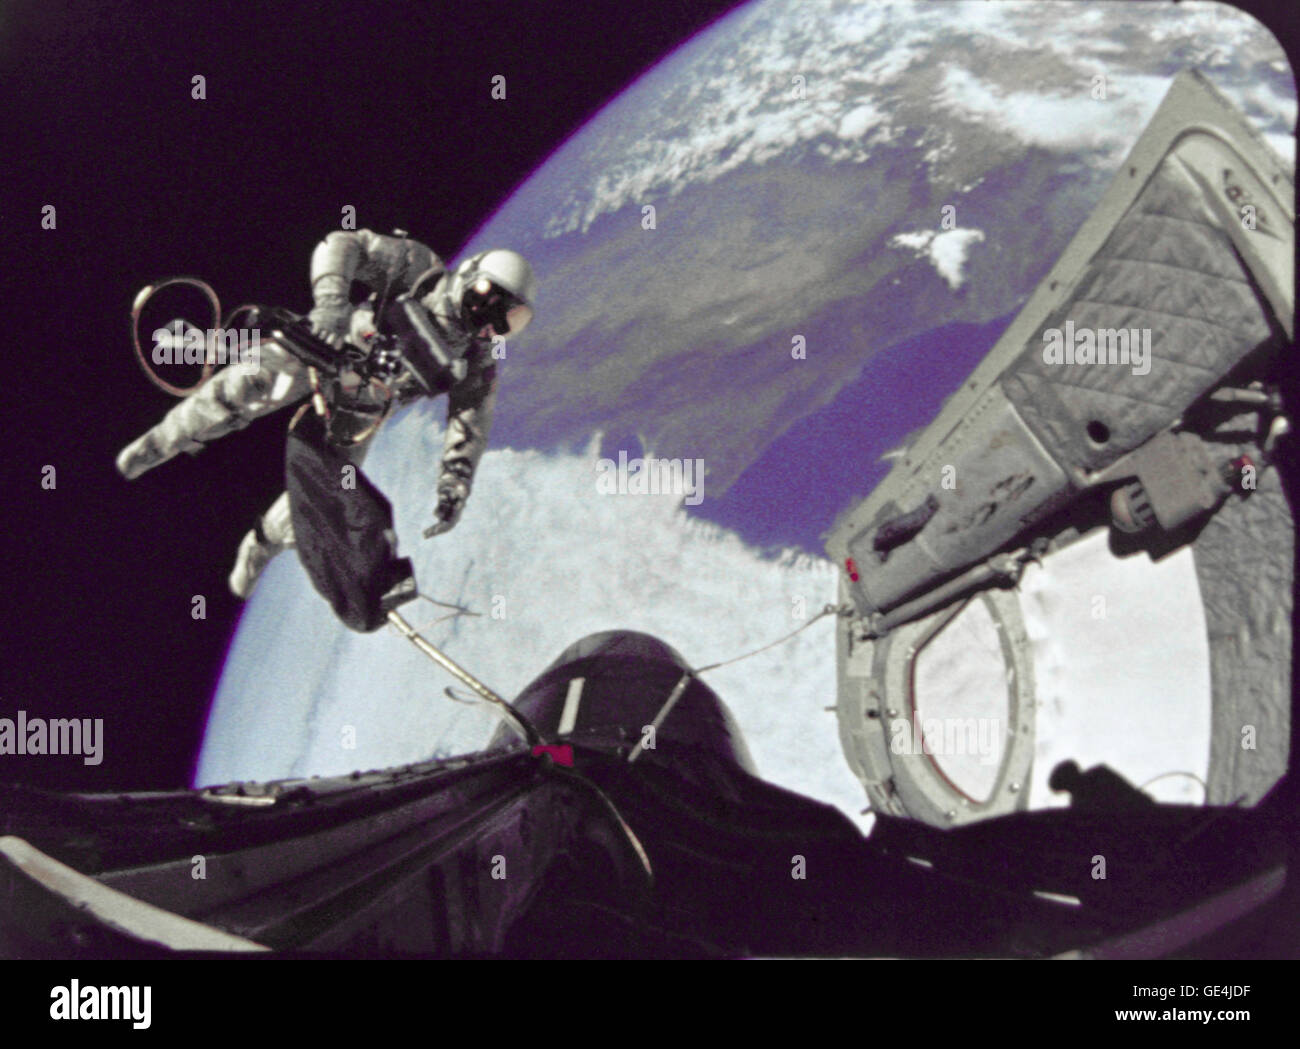 Astronauta Edward H. White II, pilota per la Gemini-Titan 4 volo spaziale, galleggia in gravità zero dello spazio. Il extravehicular attività è stata eseguita nel corso del terzo giro della Gemini 4 veicolo spaziale. Il bianco è fissato al veicolo spaziale da un 25-ft. linea ombelicale e un 23-ft. tether linea, entrambi avvolti in oro nastro per formare un cordone. Nella sua mano destra bianco porta un cronometro Self-Maneuvering unità (HHSMU). La visiera del suo casco è placcato in oro per proteggerlo dai raggi non filtrata del sole. Immagine # : S65-29730 Foto Stock